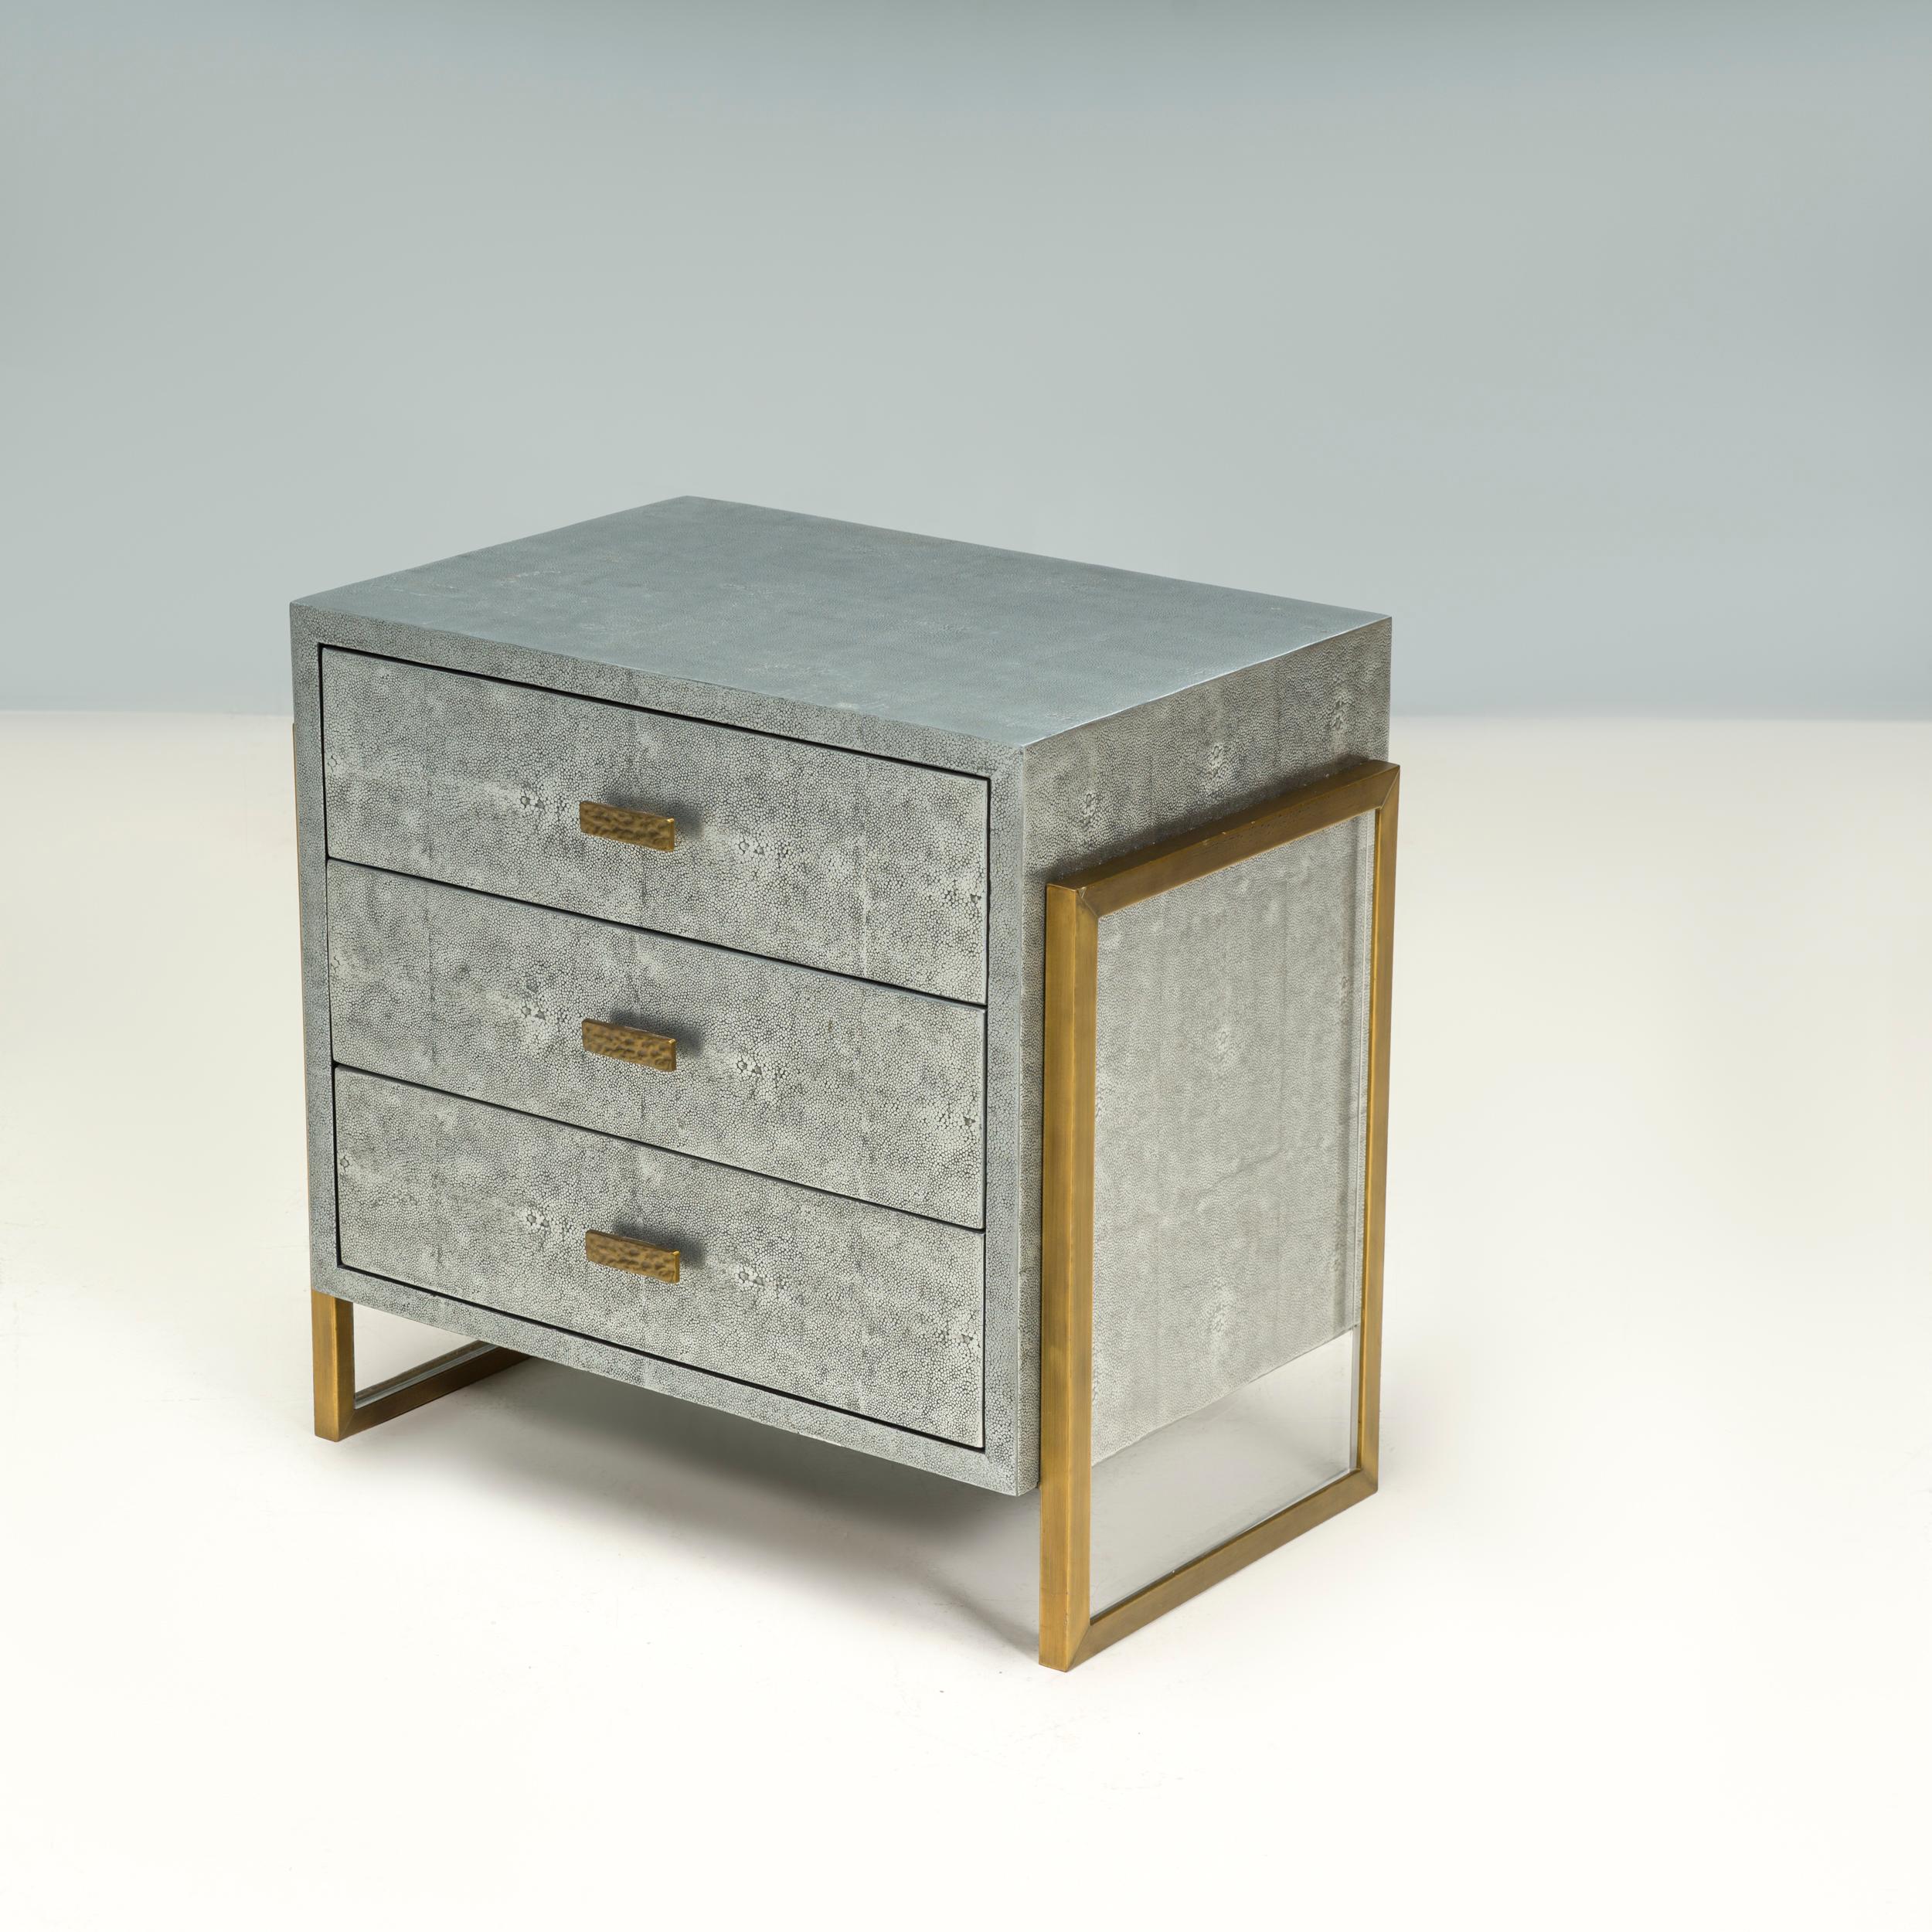 Julian Chichester gründete 1995 seine Möbeldesignfirma, die sich von den klassischen Formen des 19. und 20. Jahrhunderts inspirieren ließ und ihnen durch zeitgenössische Oberflächen und Details eine eigene Note verlieh.

Der Nachttisch Brooklyn ist